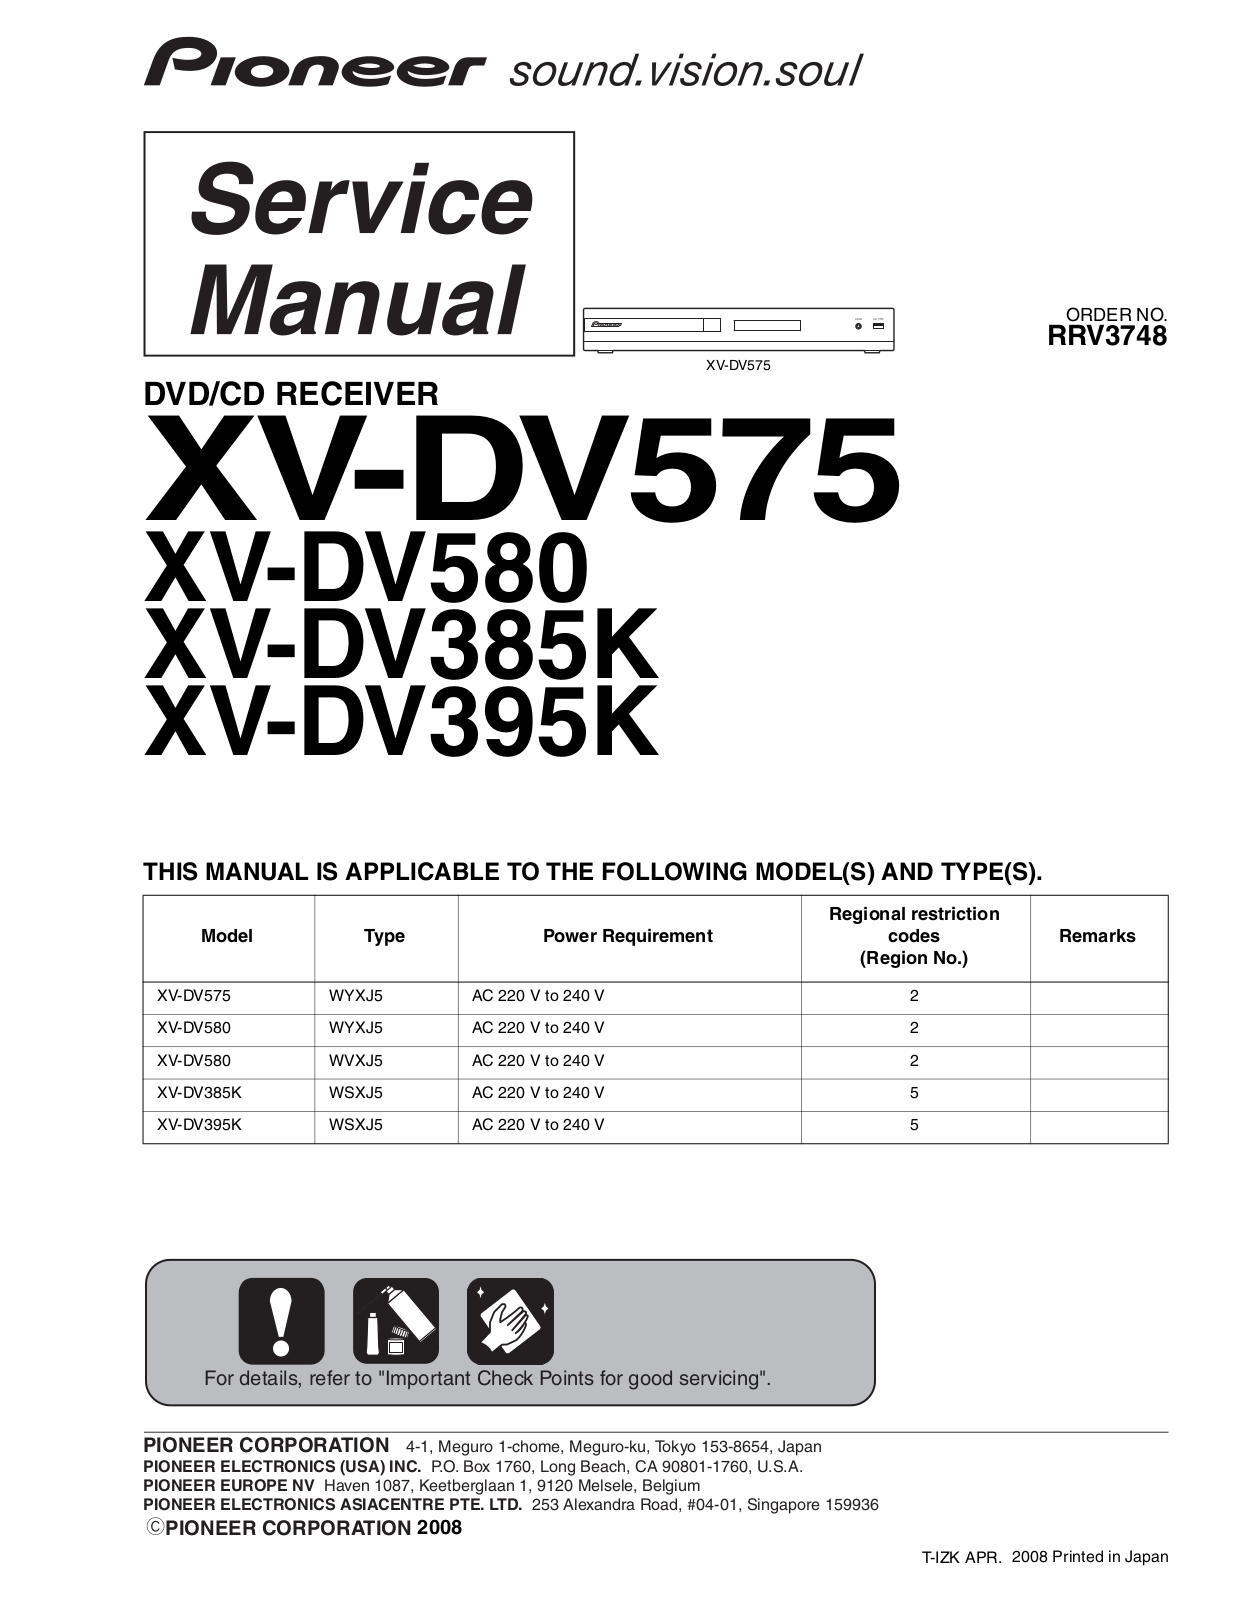 Pioneer XV-DV575, XV-DV580, XV-DV385K, XV-DV395K Service manual